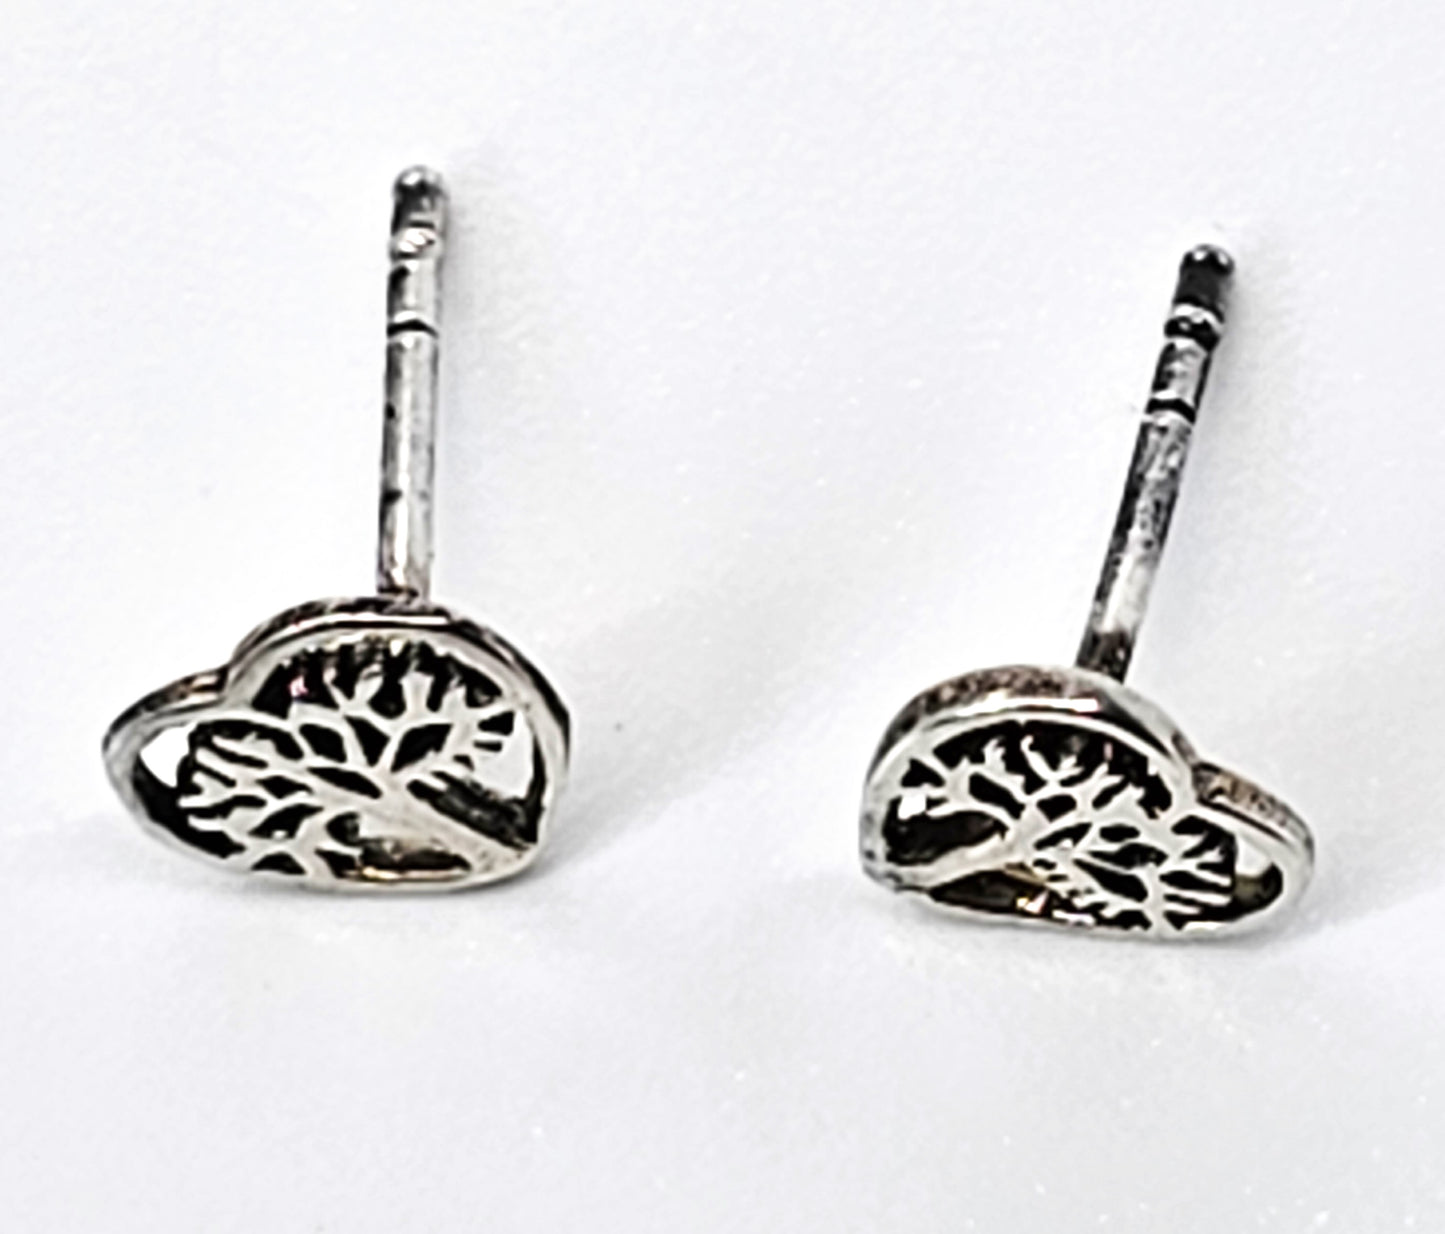 Tree of life open work heart sterling silver stud earrings